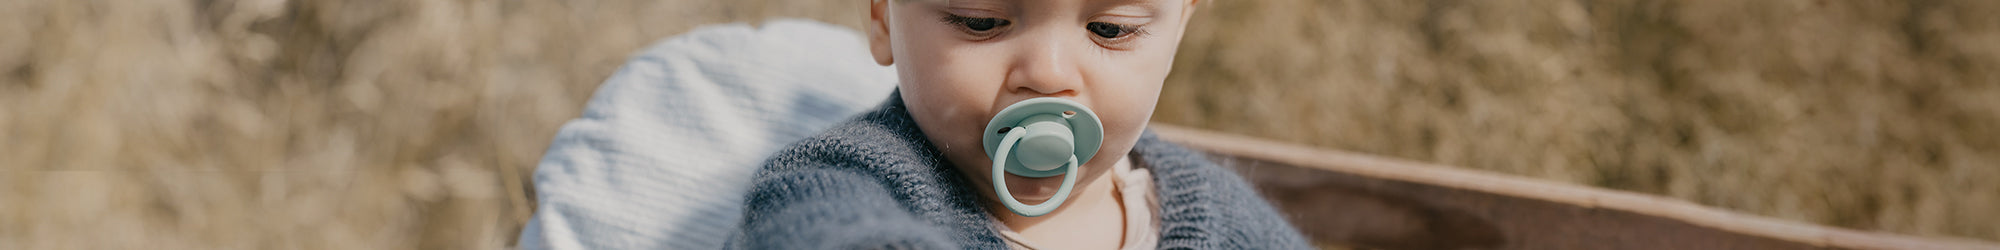 Bibs - Chupetes de bebé, colección Try-it, incluye chupetes Colour, De Lux,  Couture y Supreme, de silicona y goma natural, sin BPA, fabricados en